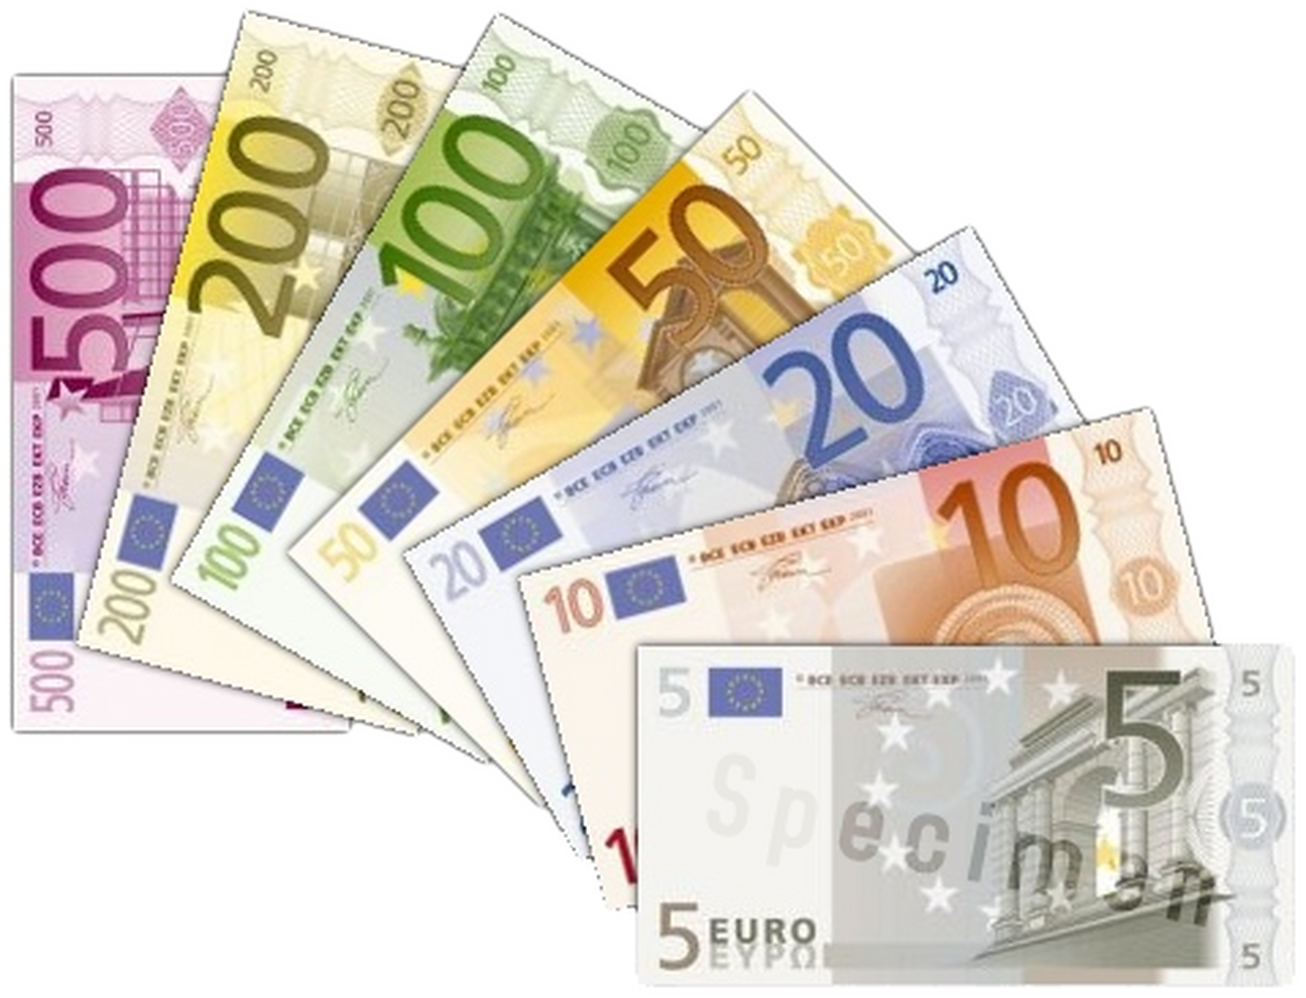 ۲۰ سال تجارت یورو؛ آشنایی با مراحل اصلی تاریخ ارز اروپا 